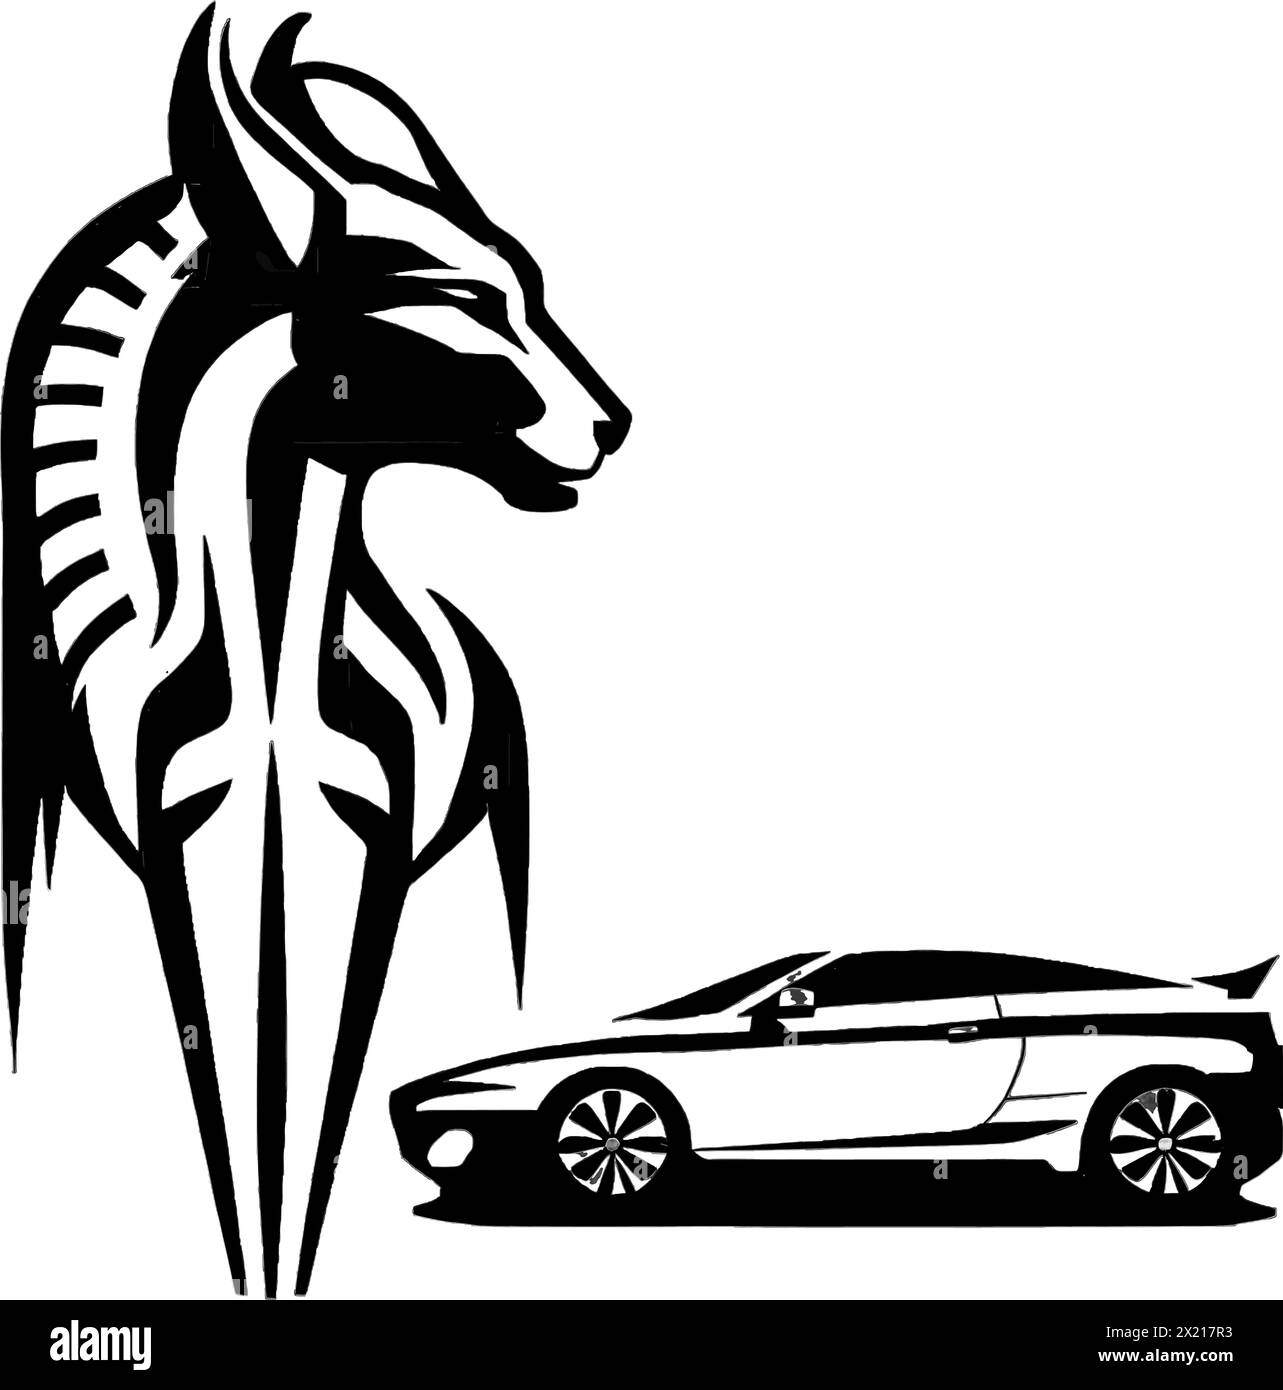 Illustration vectorielle d'un cheval et d'une voiture en silhouette noire sur un fond blanc propre, capturant des formes gracieuses. Illustration de Vecteur